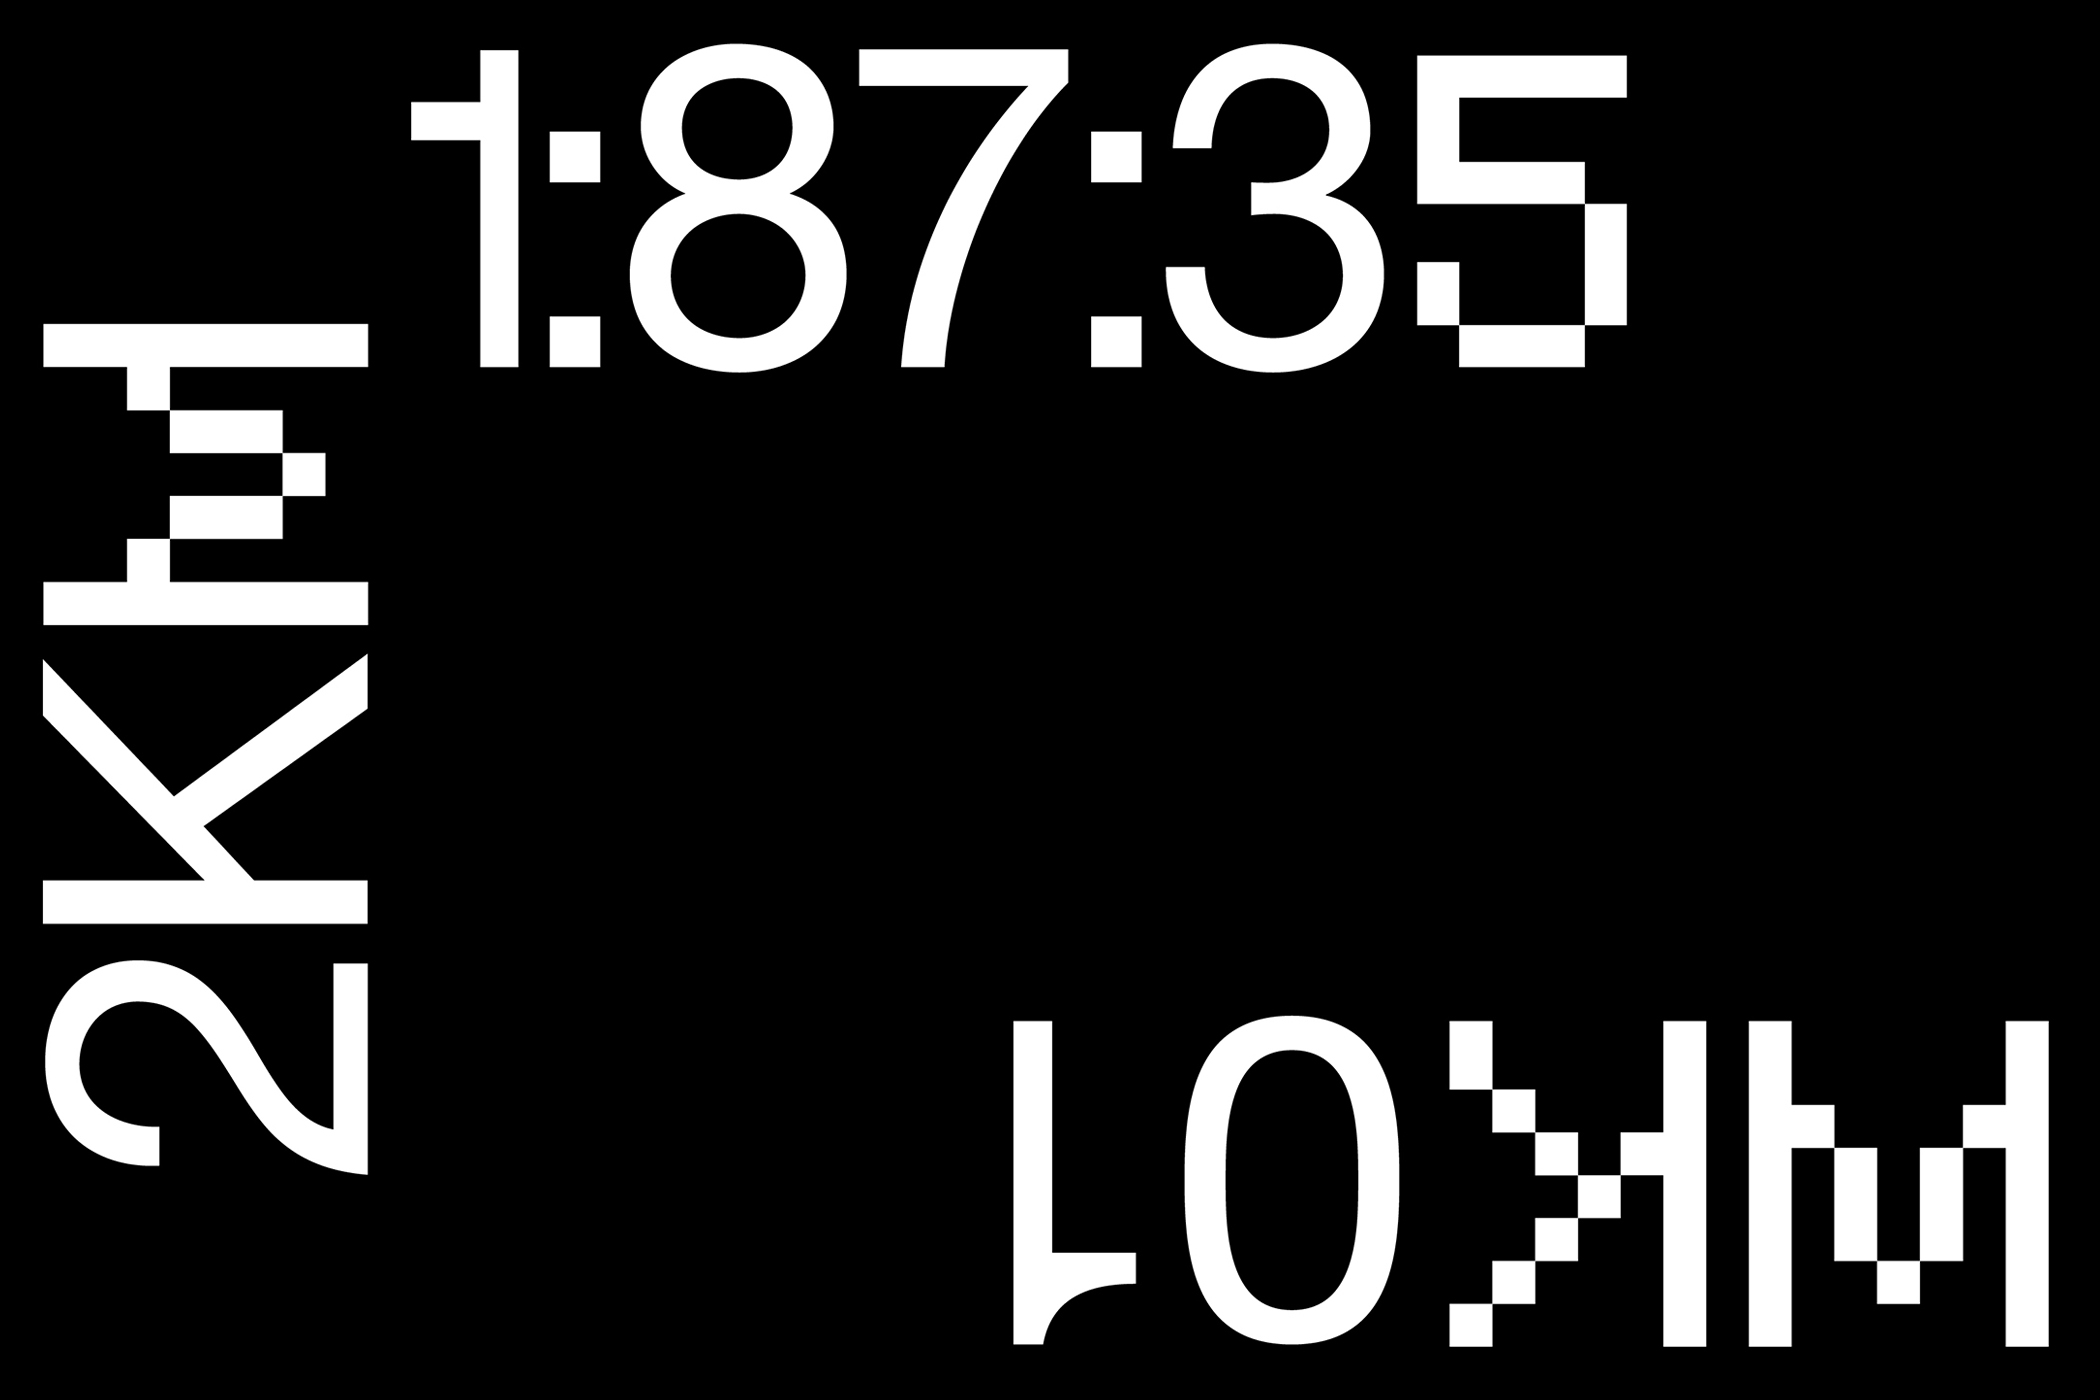 新复古未来派像素英文装饰字体 Neue Pixel Grot